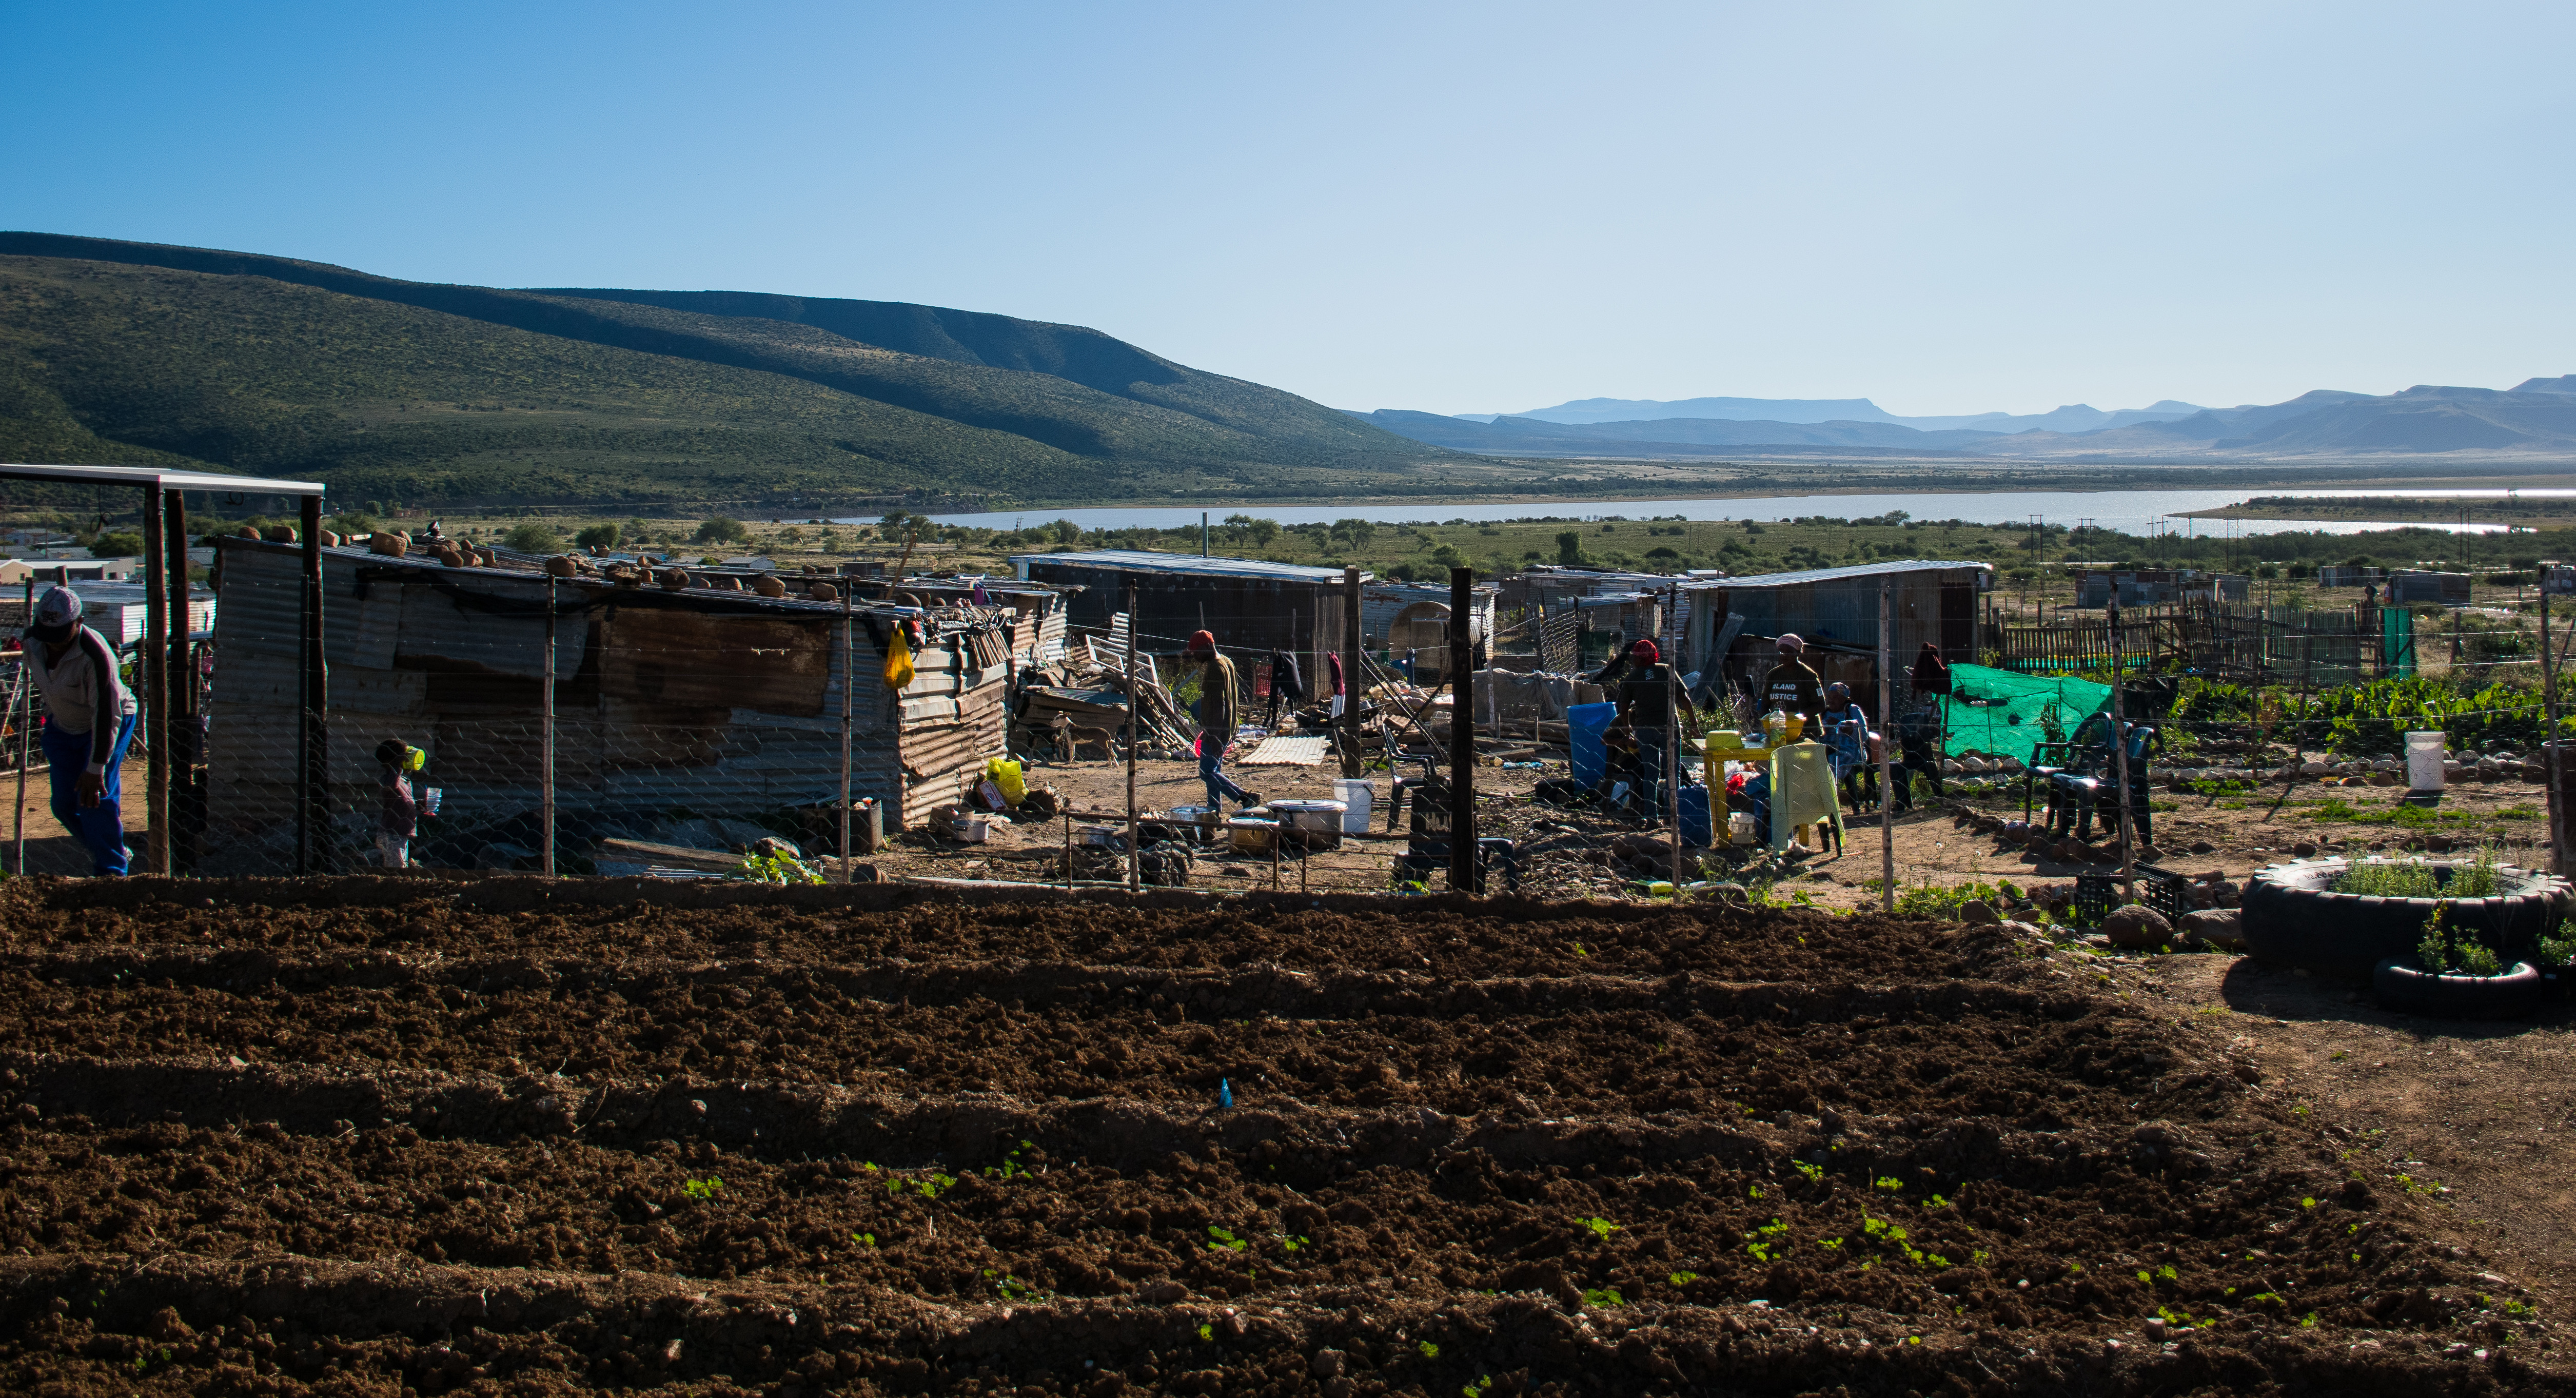 The community vegetable garden, Vrygronde informal settlement in Graaff-Reinet, Eastern Cape